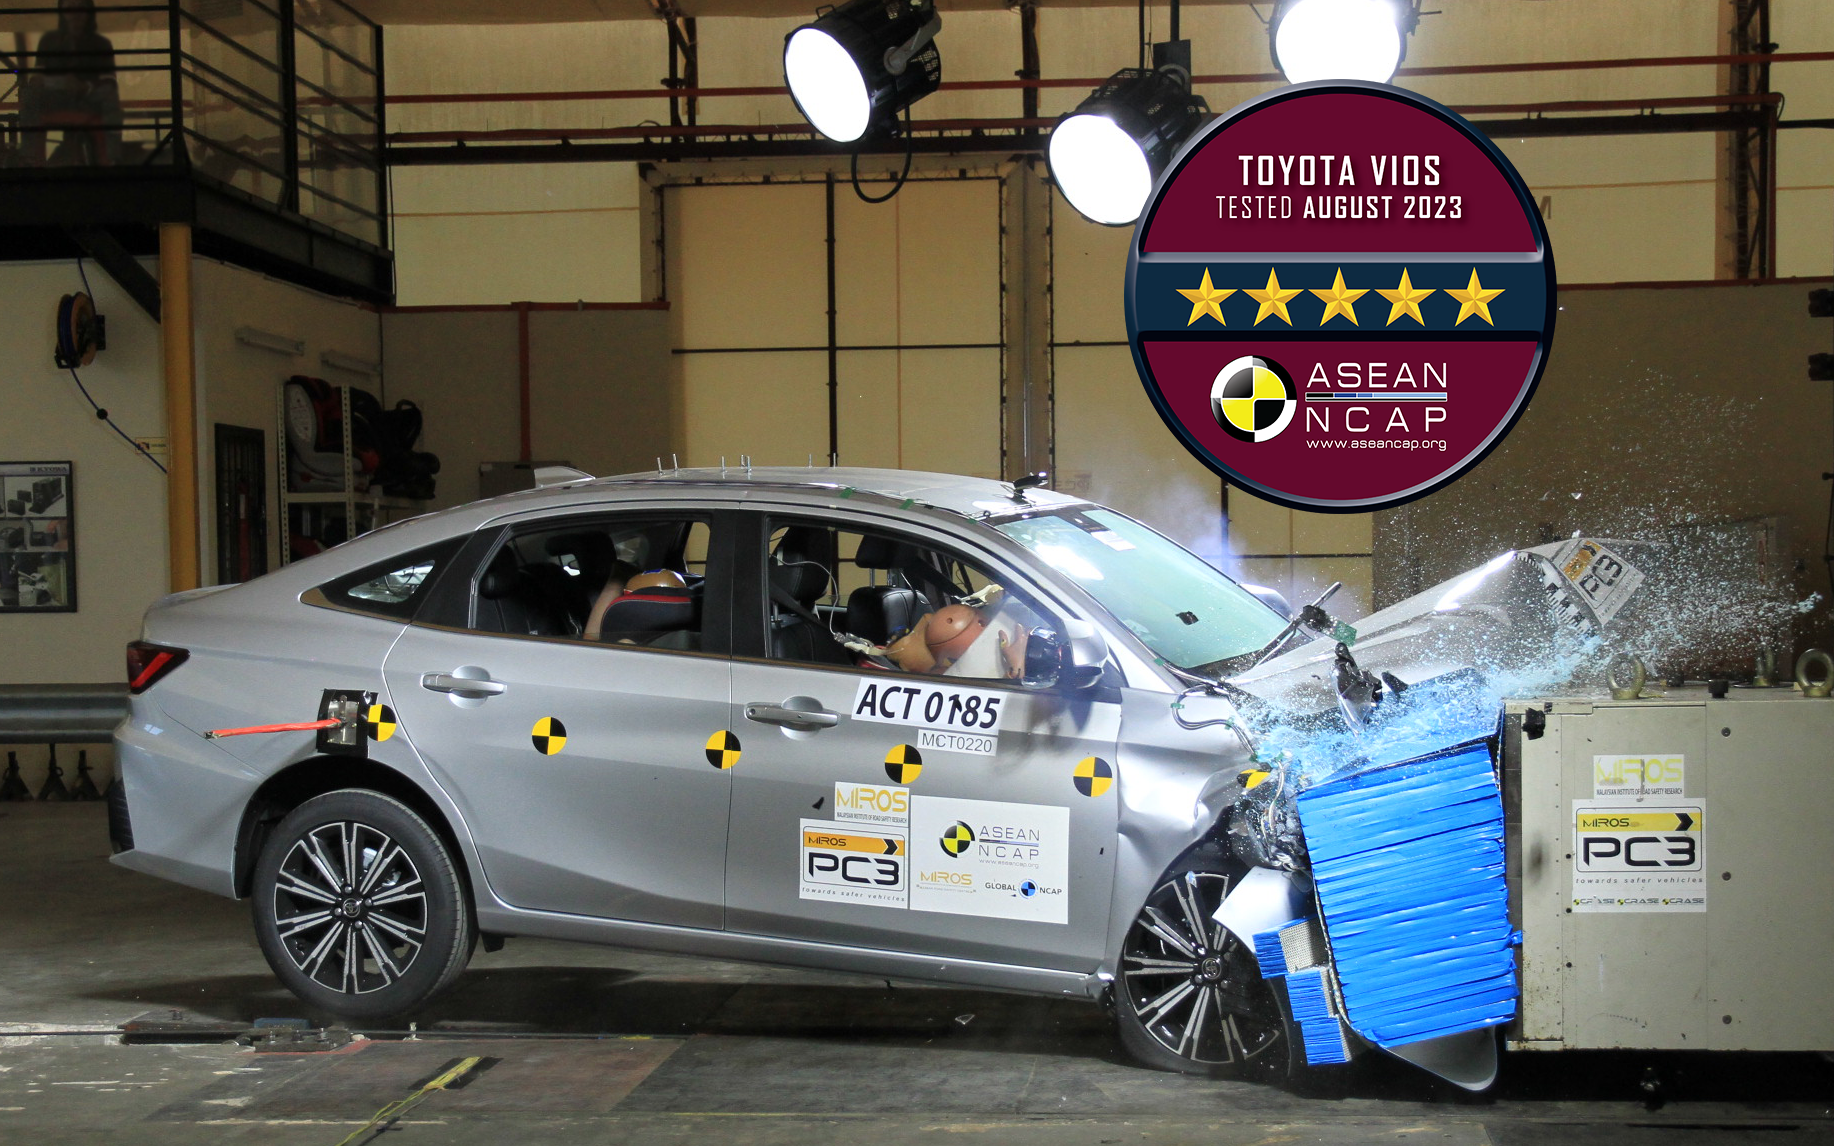 Toyota Vios thế hệ mới được xếp hạng an toàn 5 sao bởi ASEAN NCAP